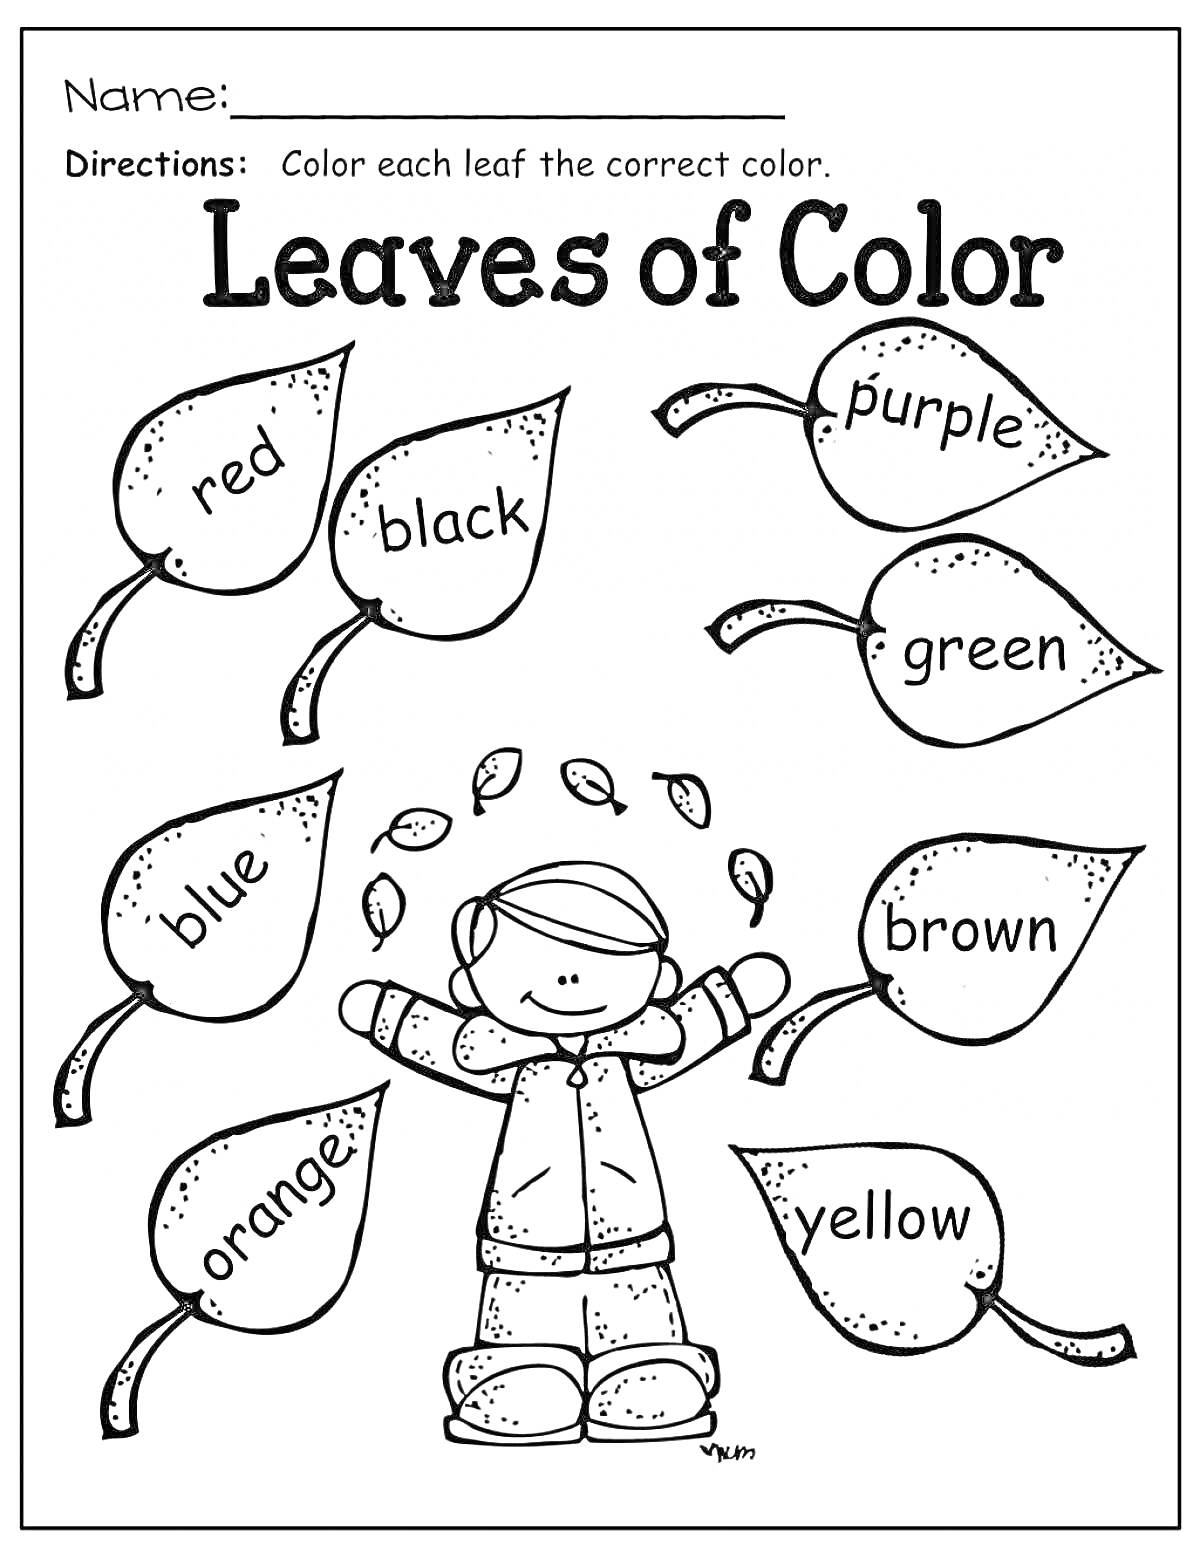 Раскраска Раскраска листьев, лист красный, лист черный, лист фиолетовый, лист зеленый, лист синий, лист коричневый, лист оранжевый, лист желтый, ребенок под листьями